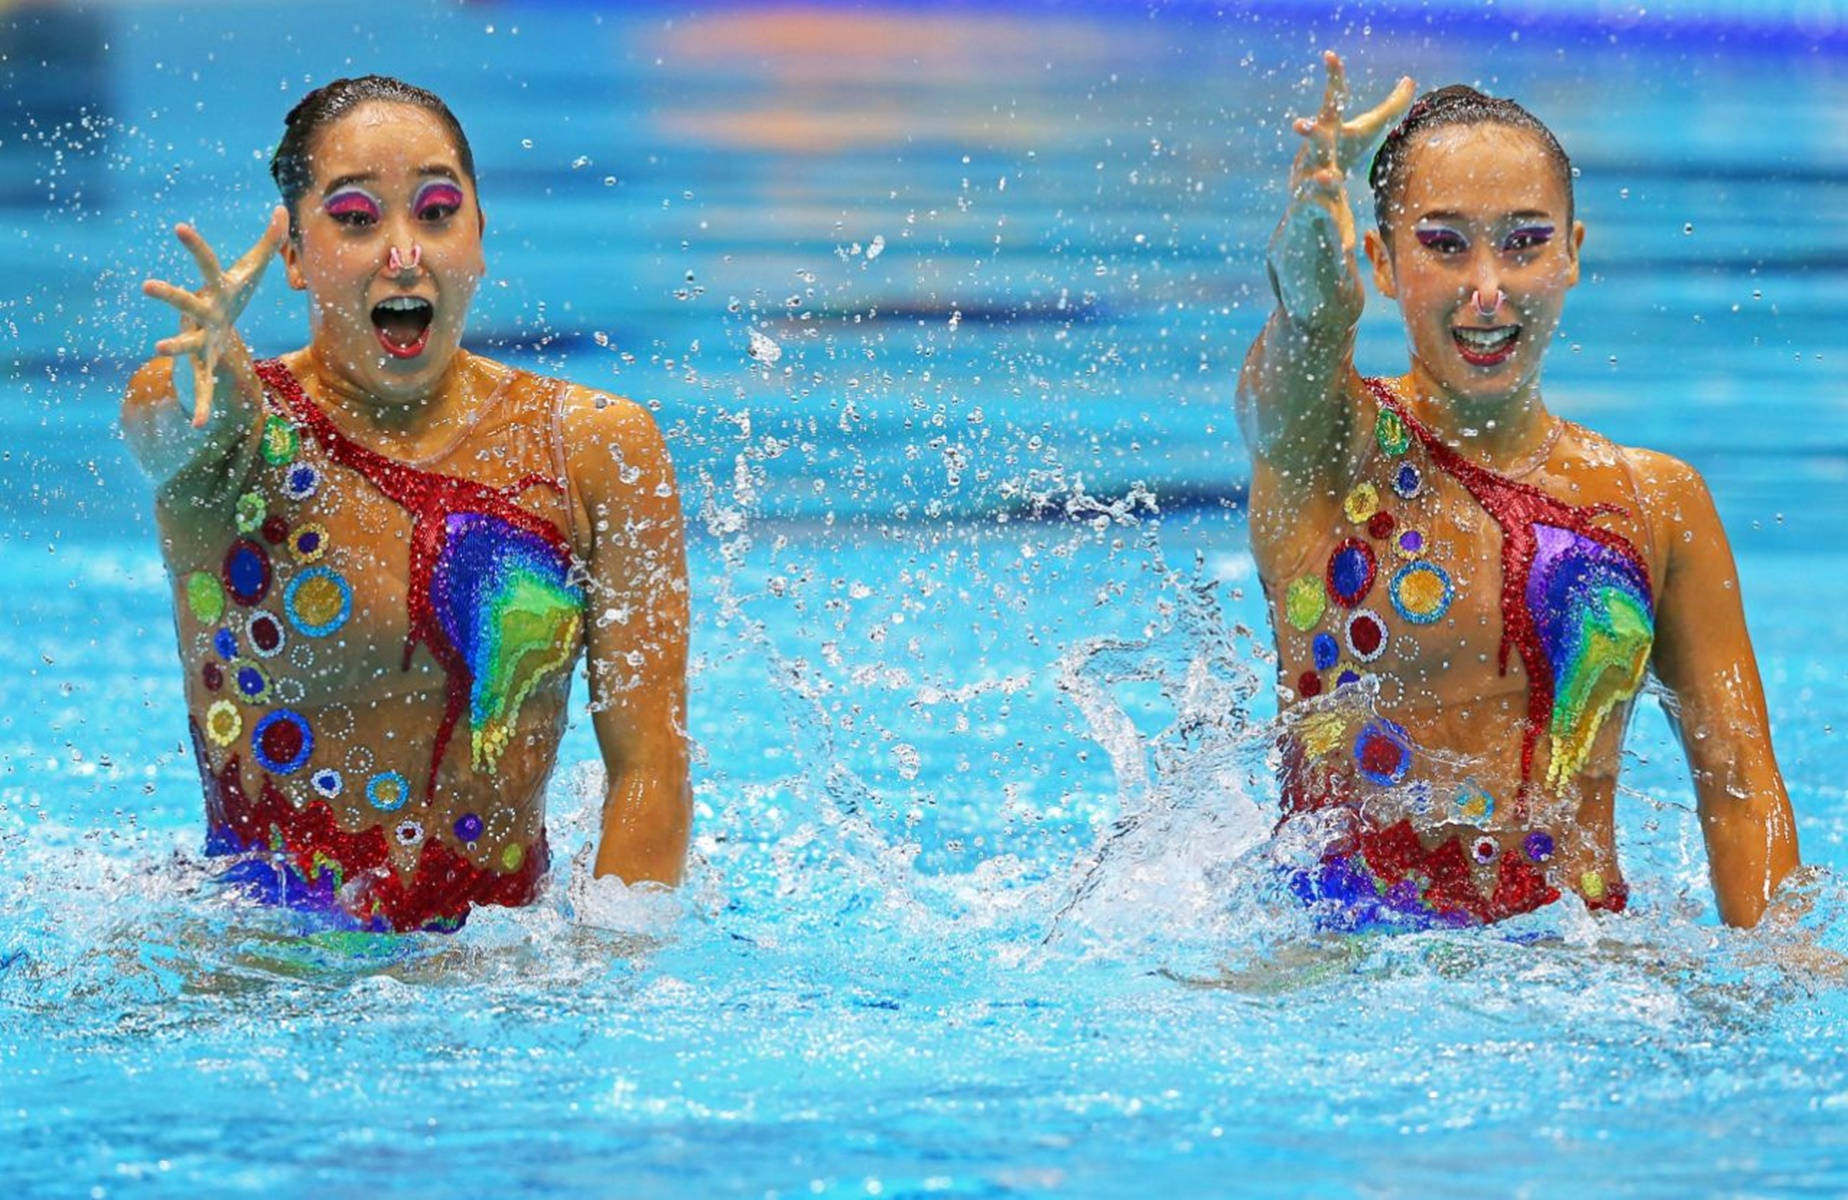 Synkroniseret svømning Mi Hyang Jang og Hivi You Jong Wallpaper